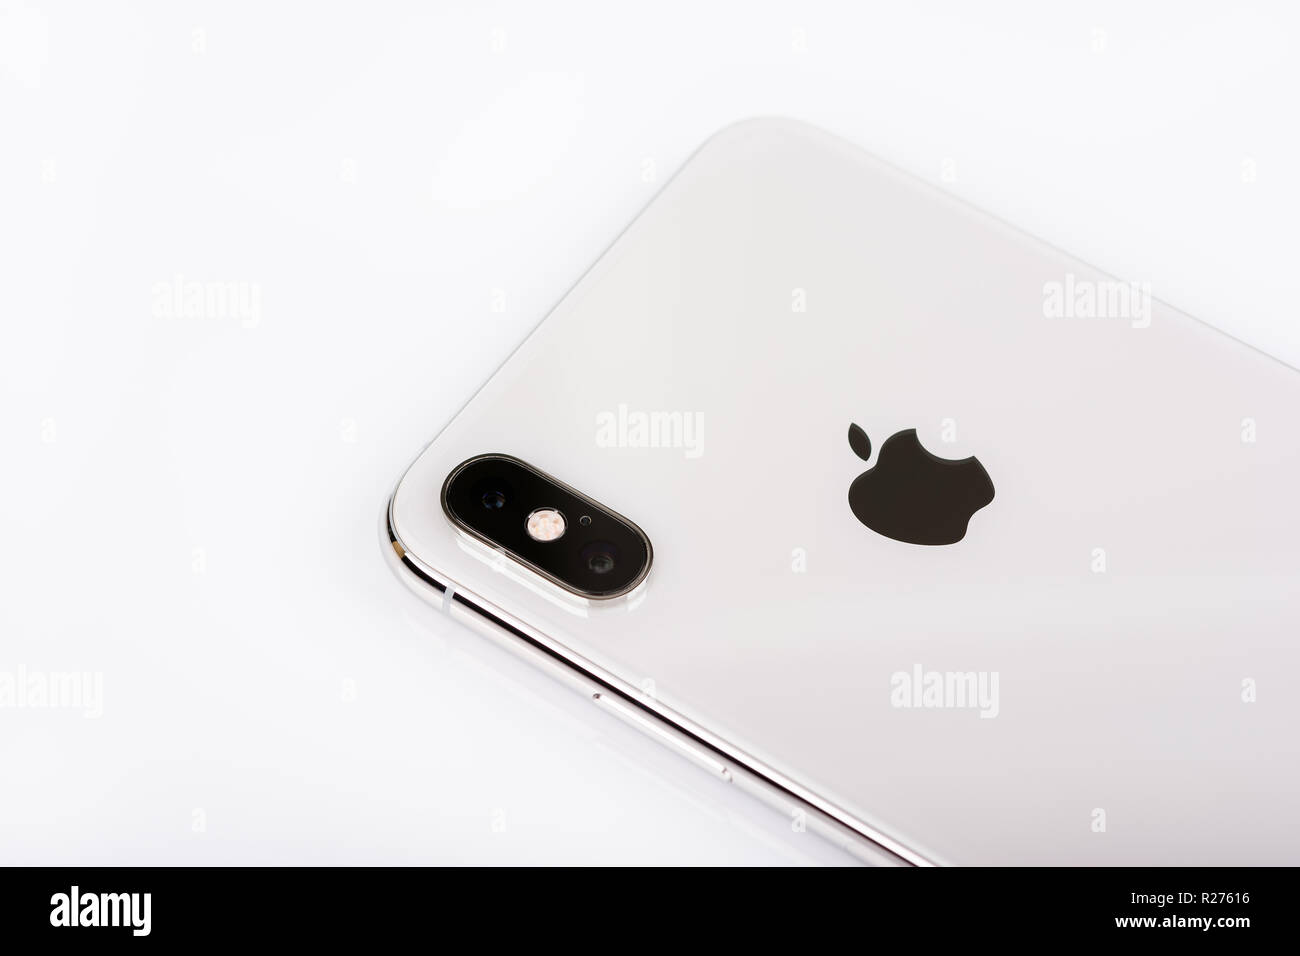 BURGAS, Bulgaria - 8 Novembre 2018: Apple iPhone Xs Max argento su sfondo bianco, vista posteriore. Foto Stock